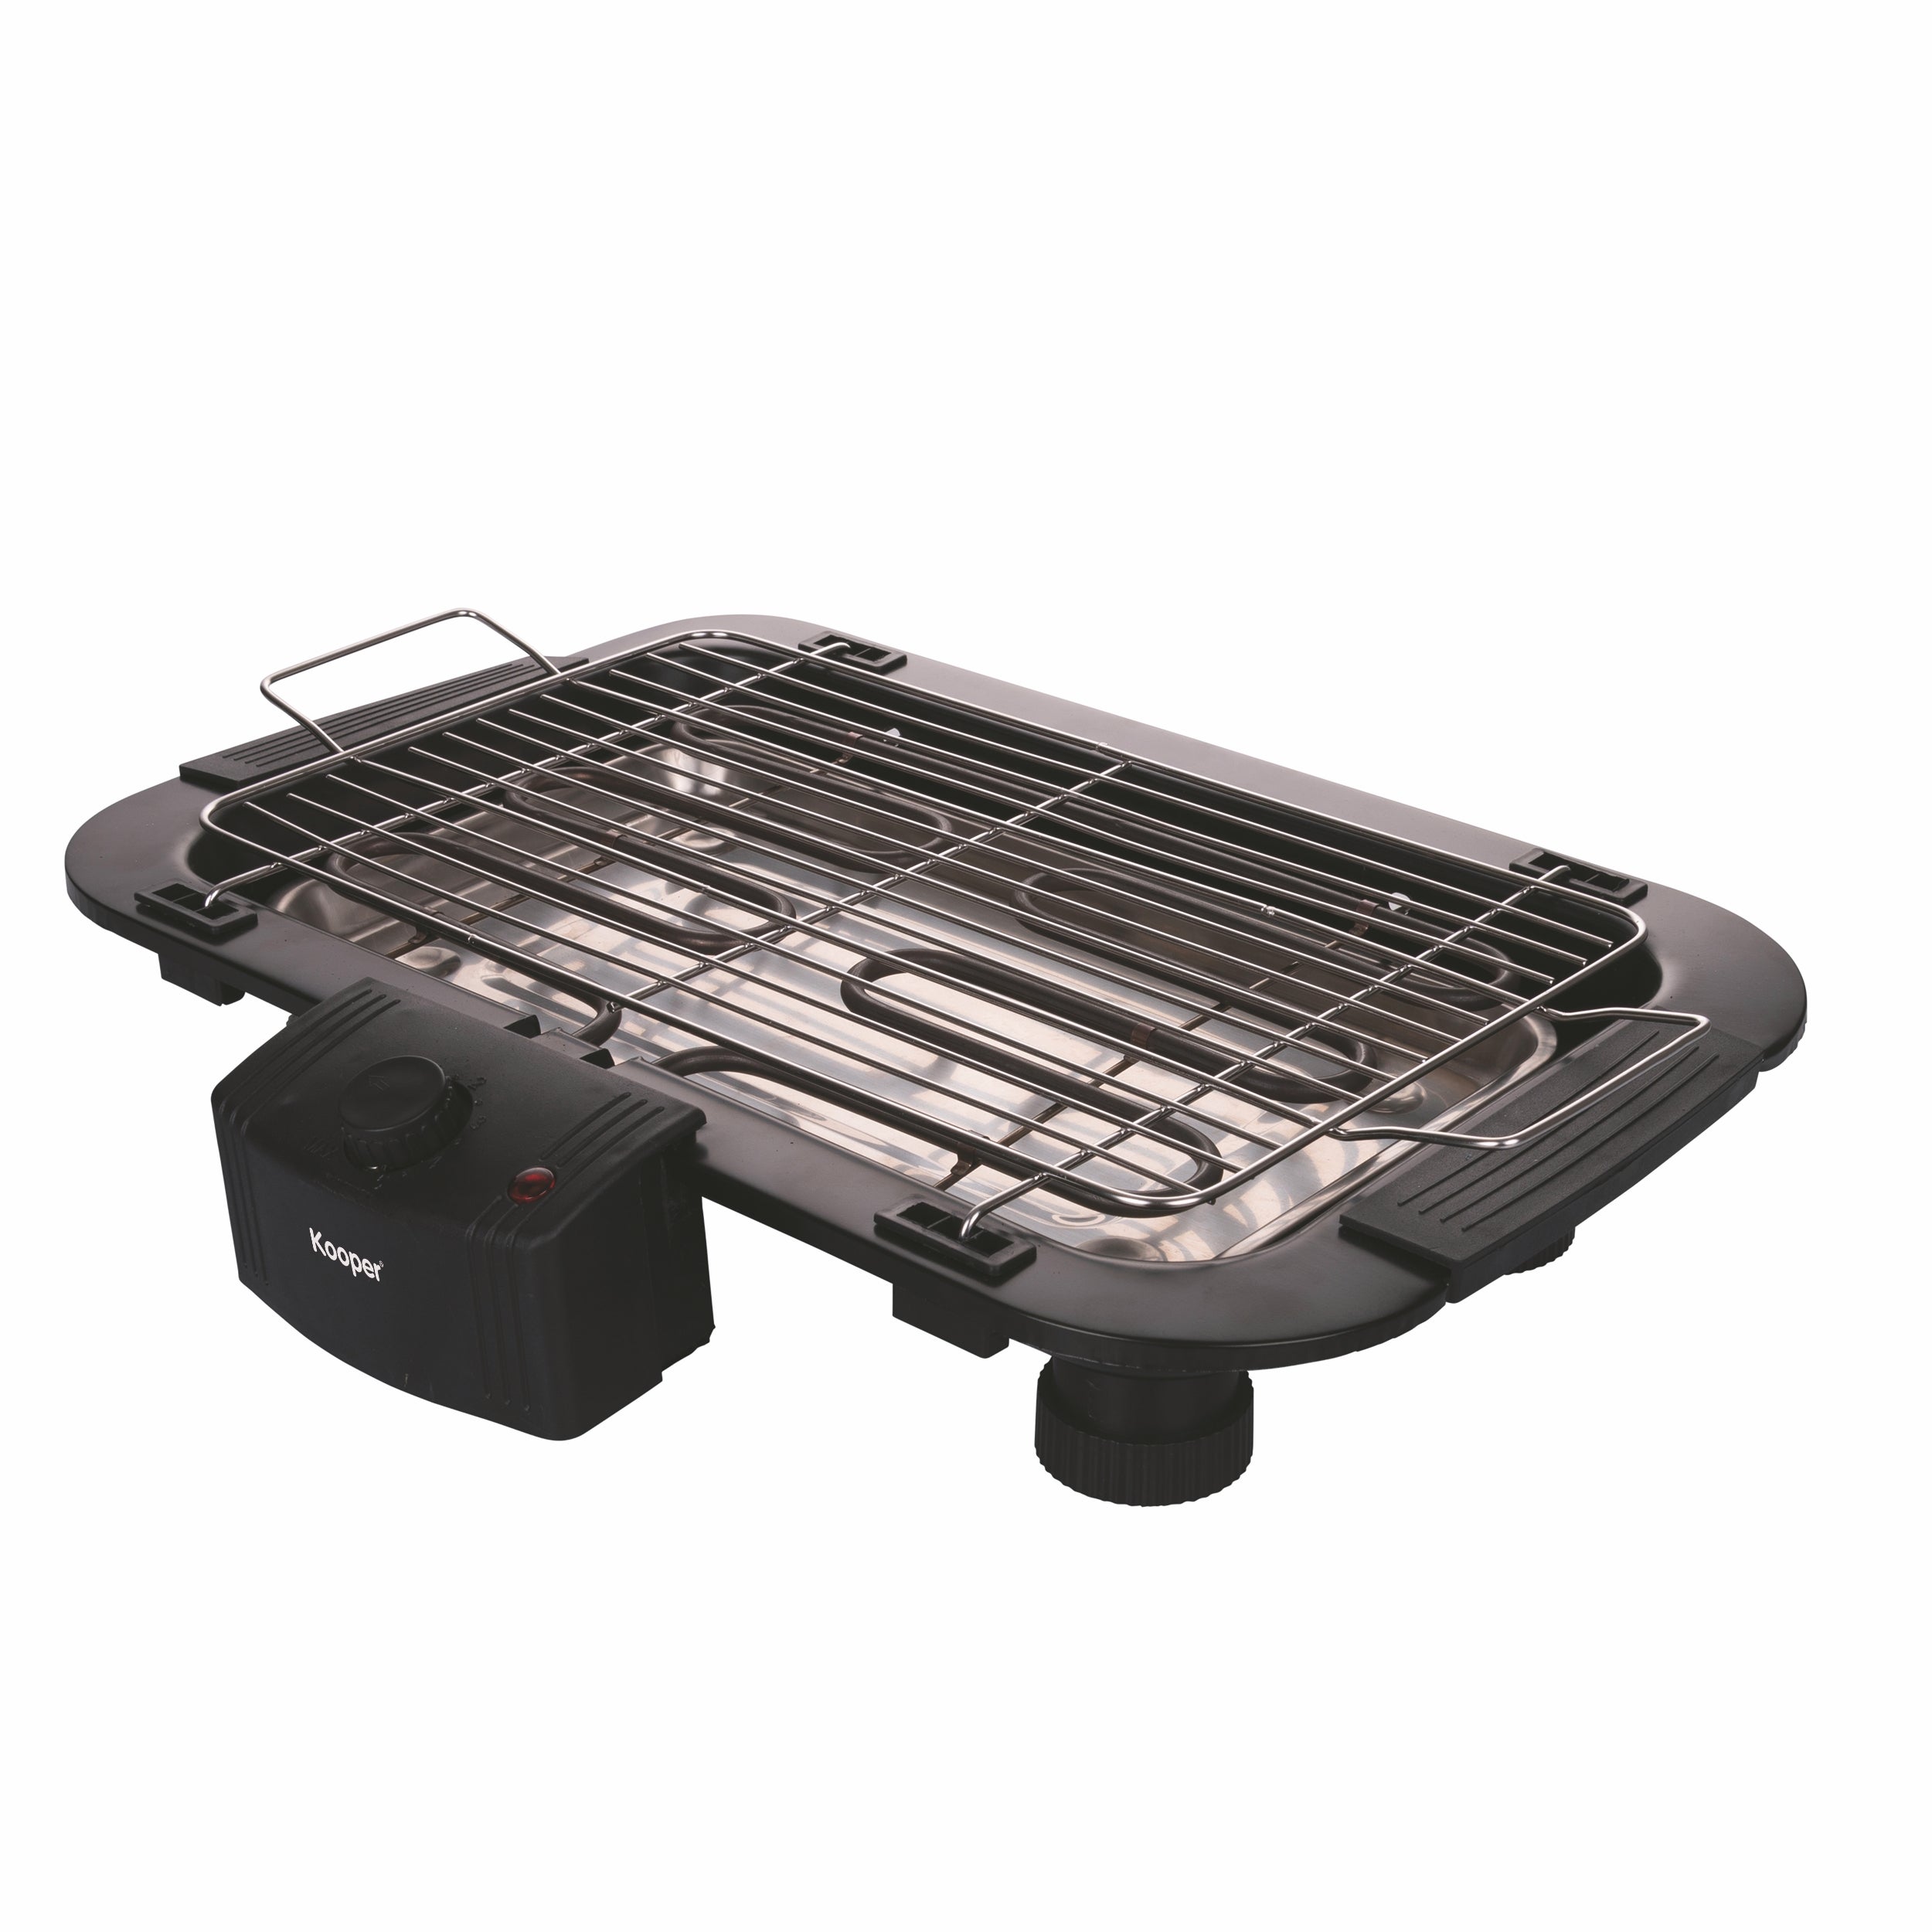 Barbecue elettrico con griglia regolabile in acciaio inox 2000W da